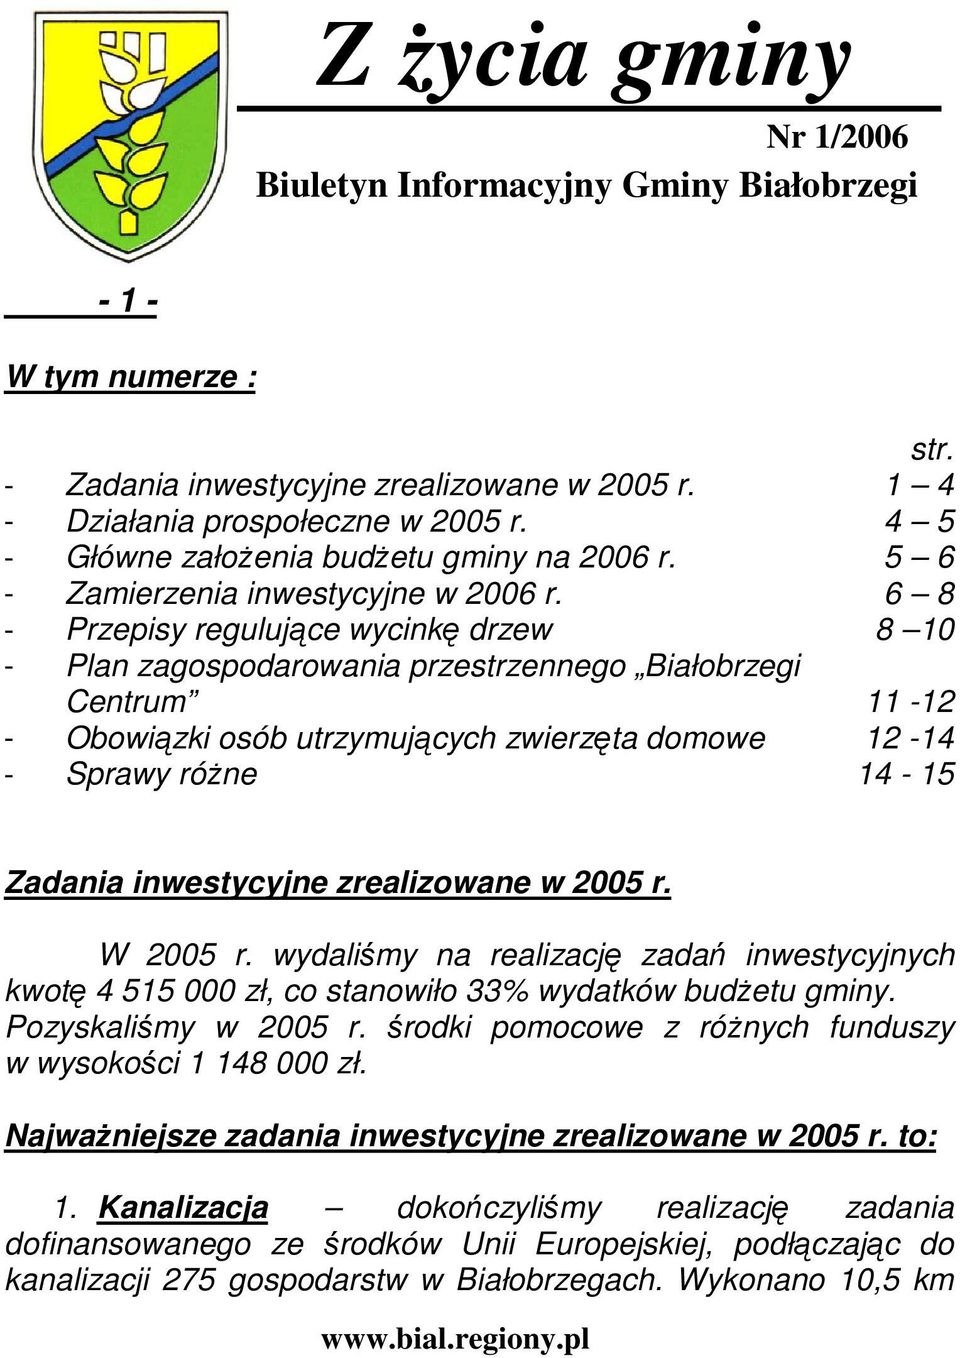 6 8 - Przepisy regulujące wycinkę drzew 8 10 - Plan zagospodarowania przestrzennego Białobrzegi Centrum 11-12 - Obowiązki osób utrzymujących zwierzęta domowe 12-14 - Sprawy róŝne 14-15 Zadania